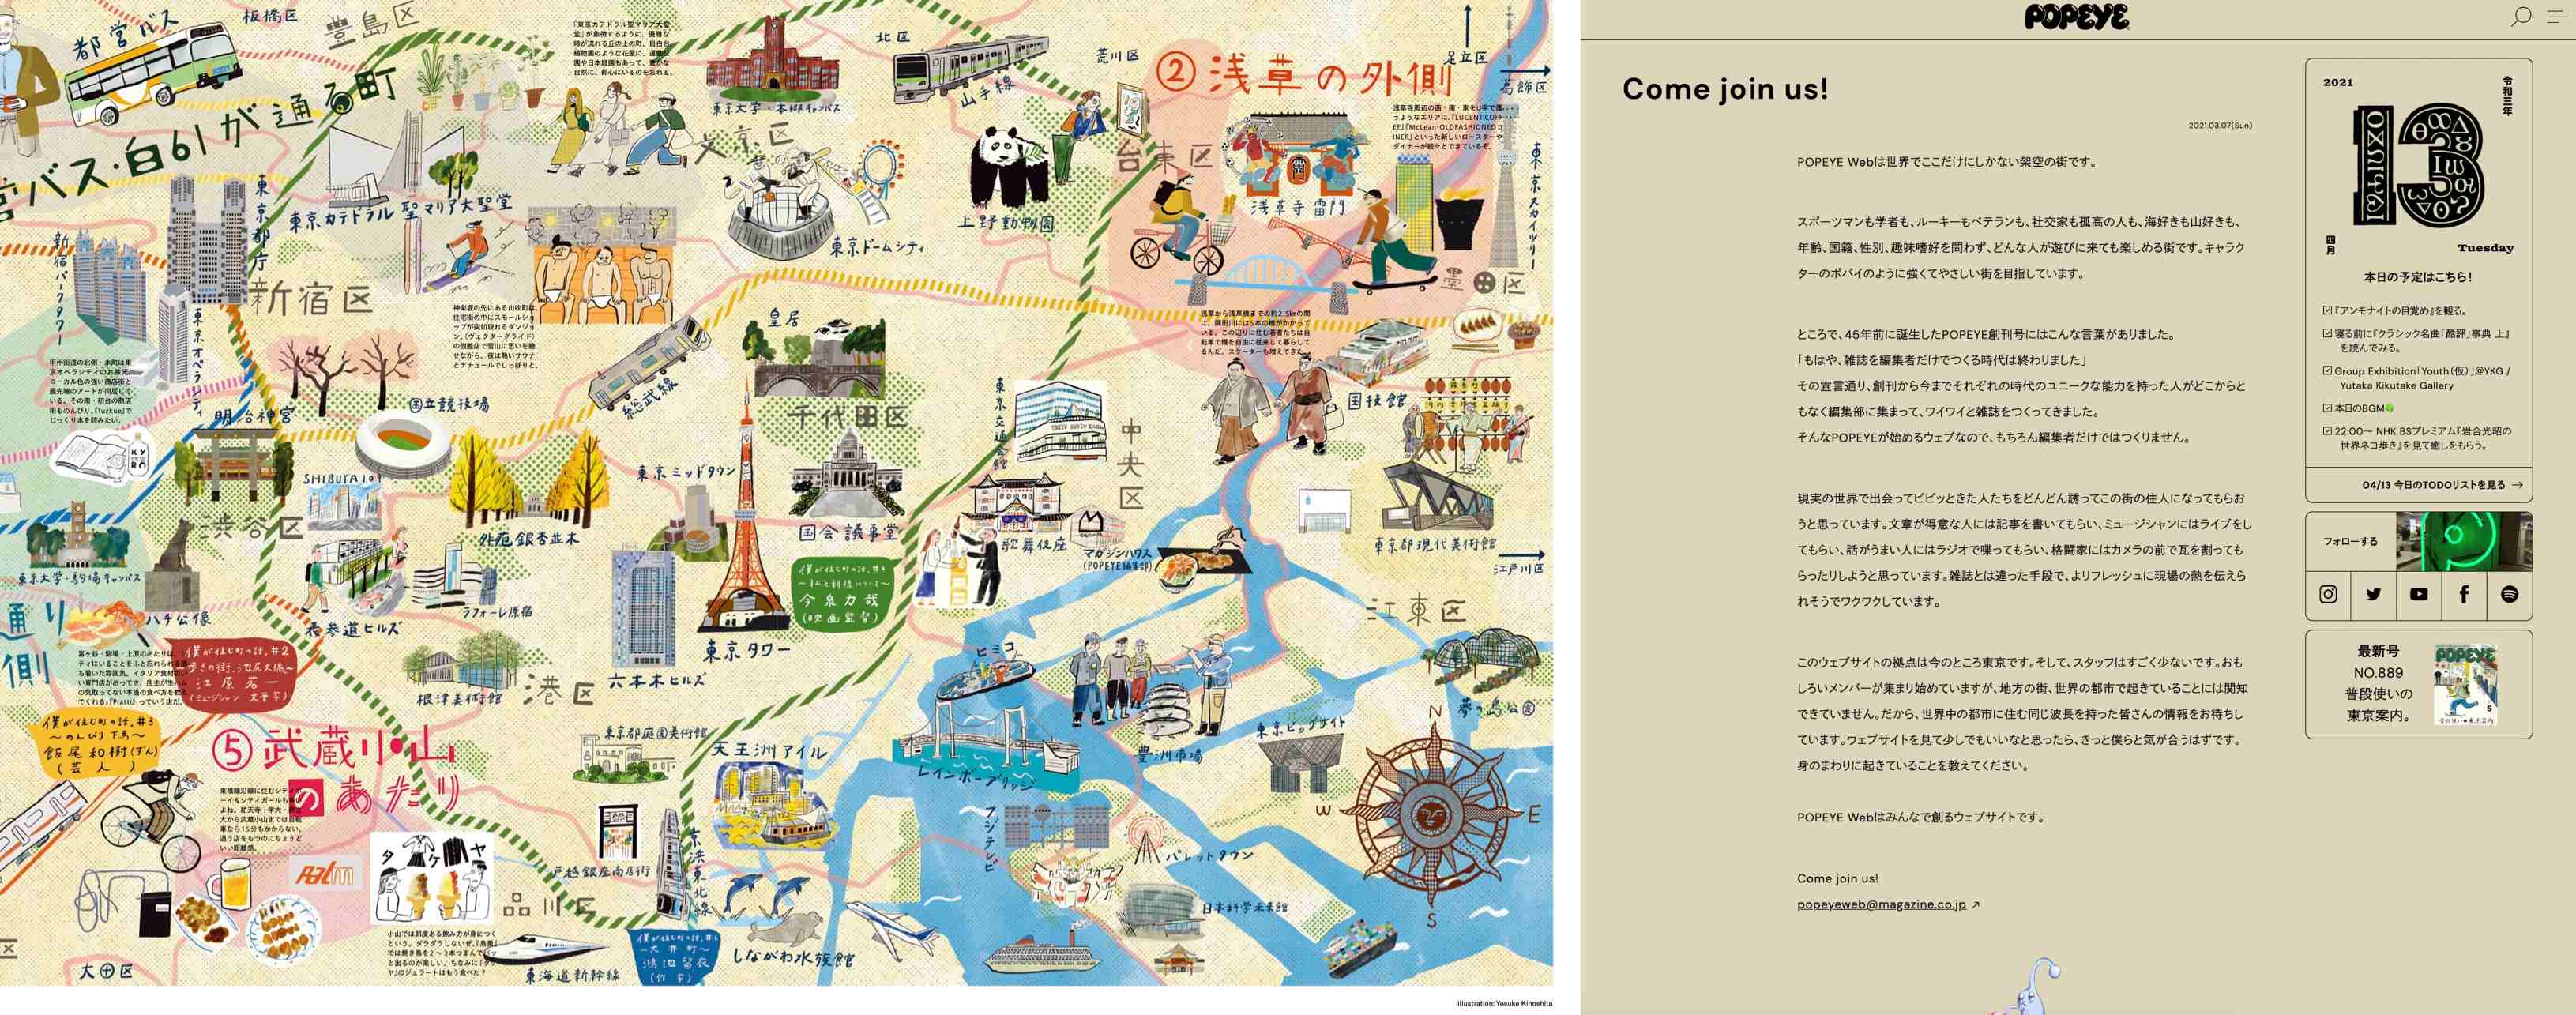 도쿄 씨티 가이드 특집 당시 종이 잡지에 게재했던 일러스트 맵과 웹 페이지 내 독자 참여와 브랜드 협력을 제안하는 투고와 문의 관련 코너 화면.